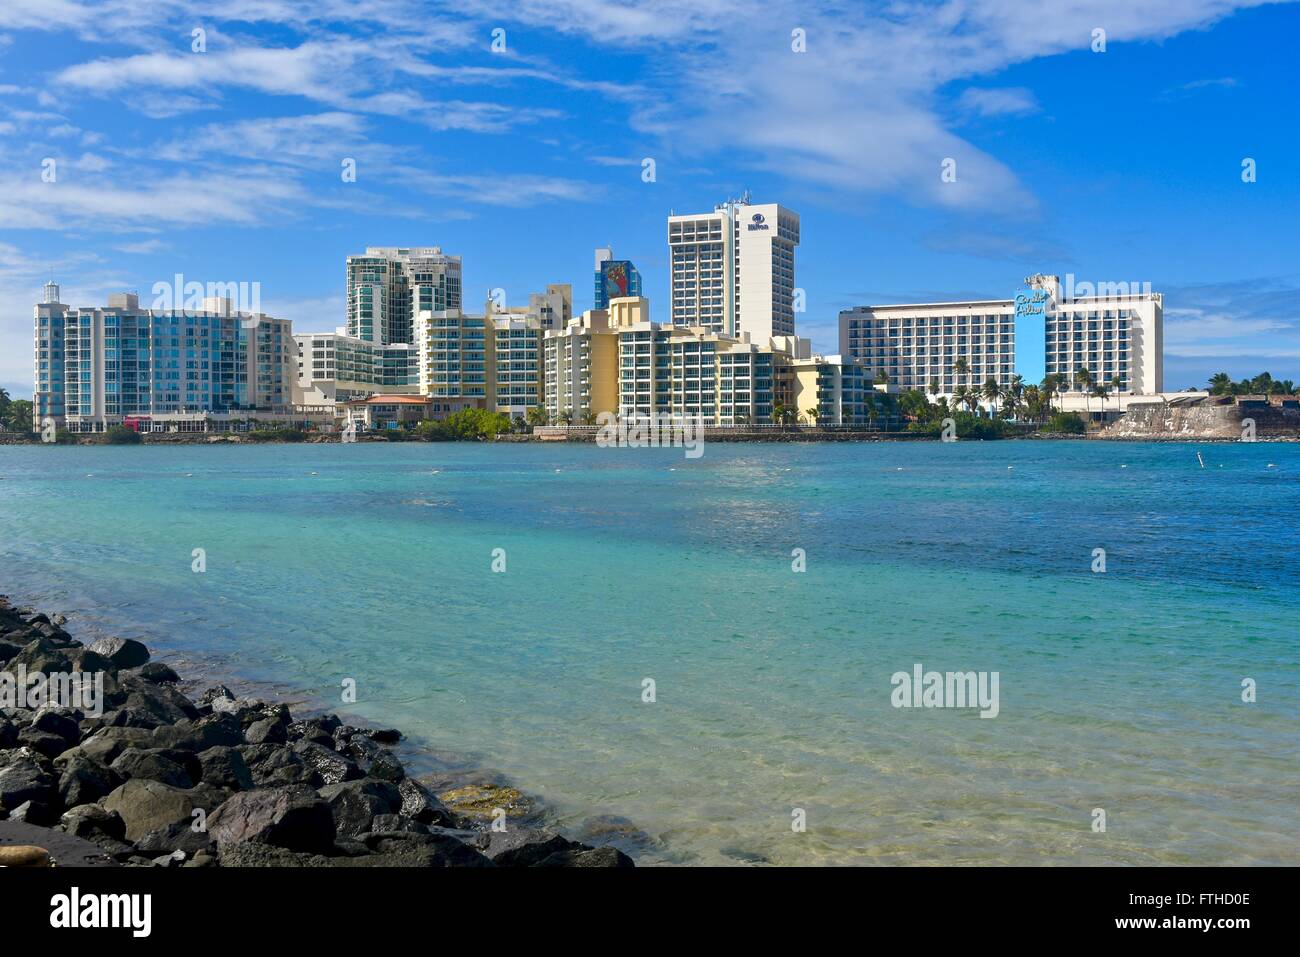 Condado beach in Puerto Rico Stock Photo